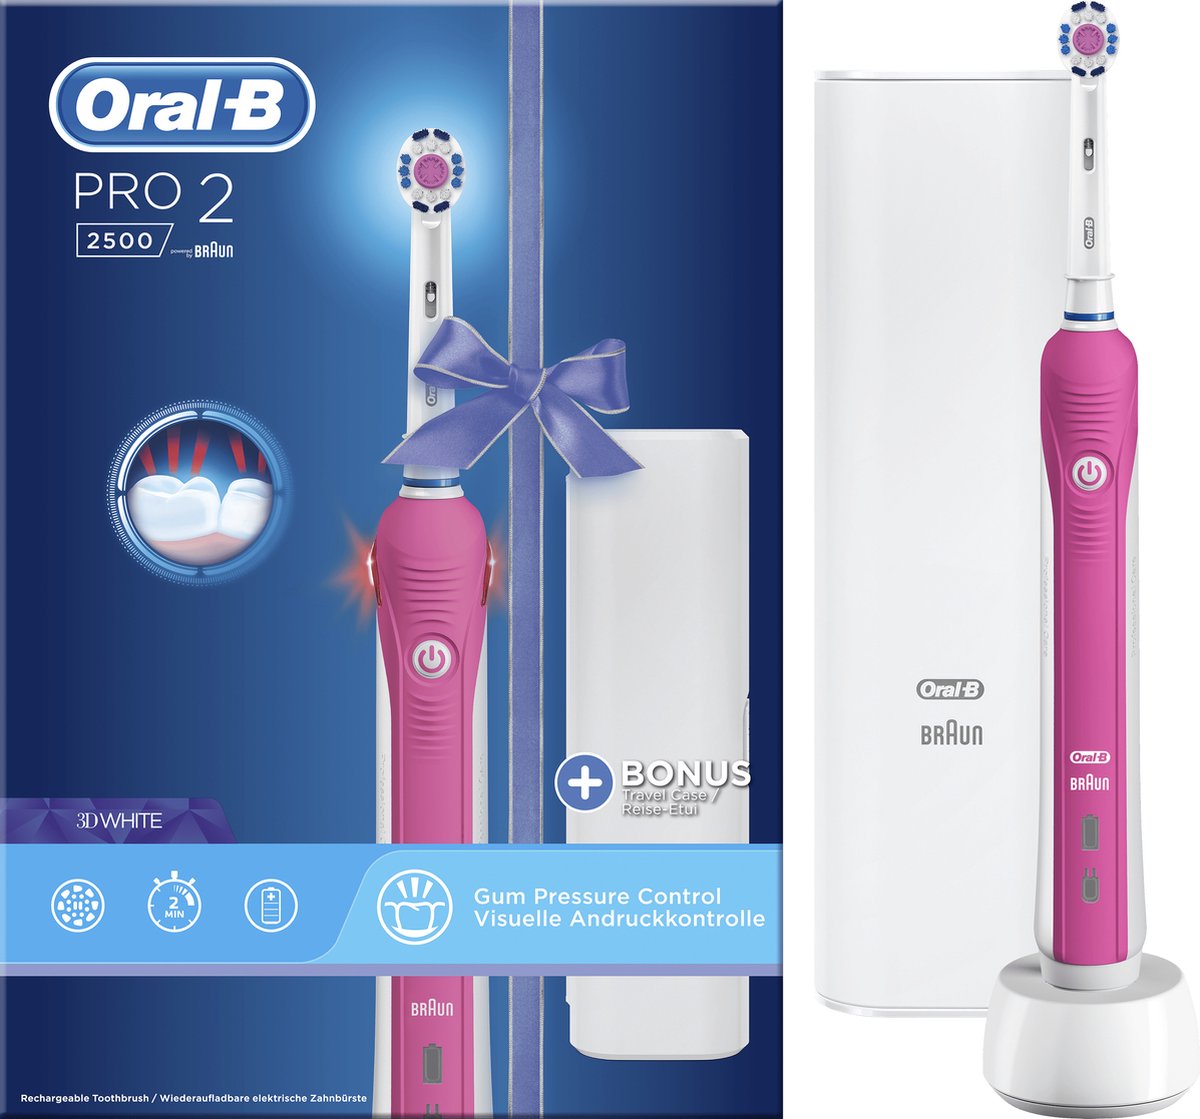 Oral-B PRO 2500 3D - Elektrische Tandenborstel - Roze - Oral B